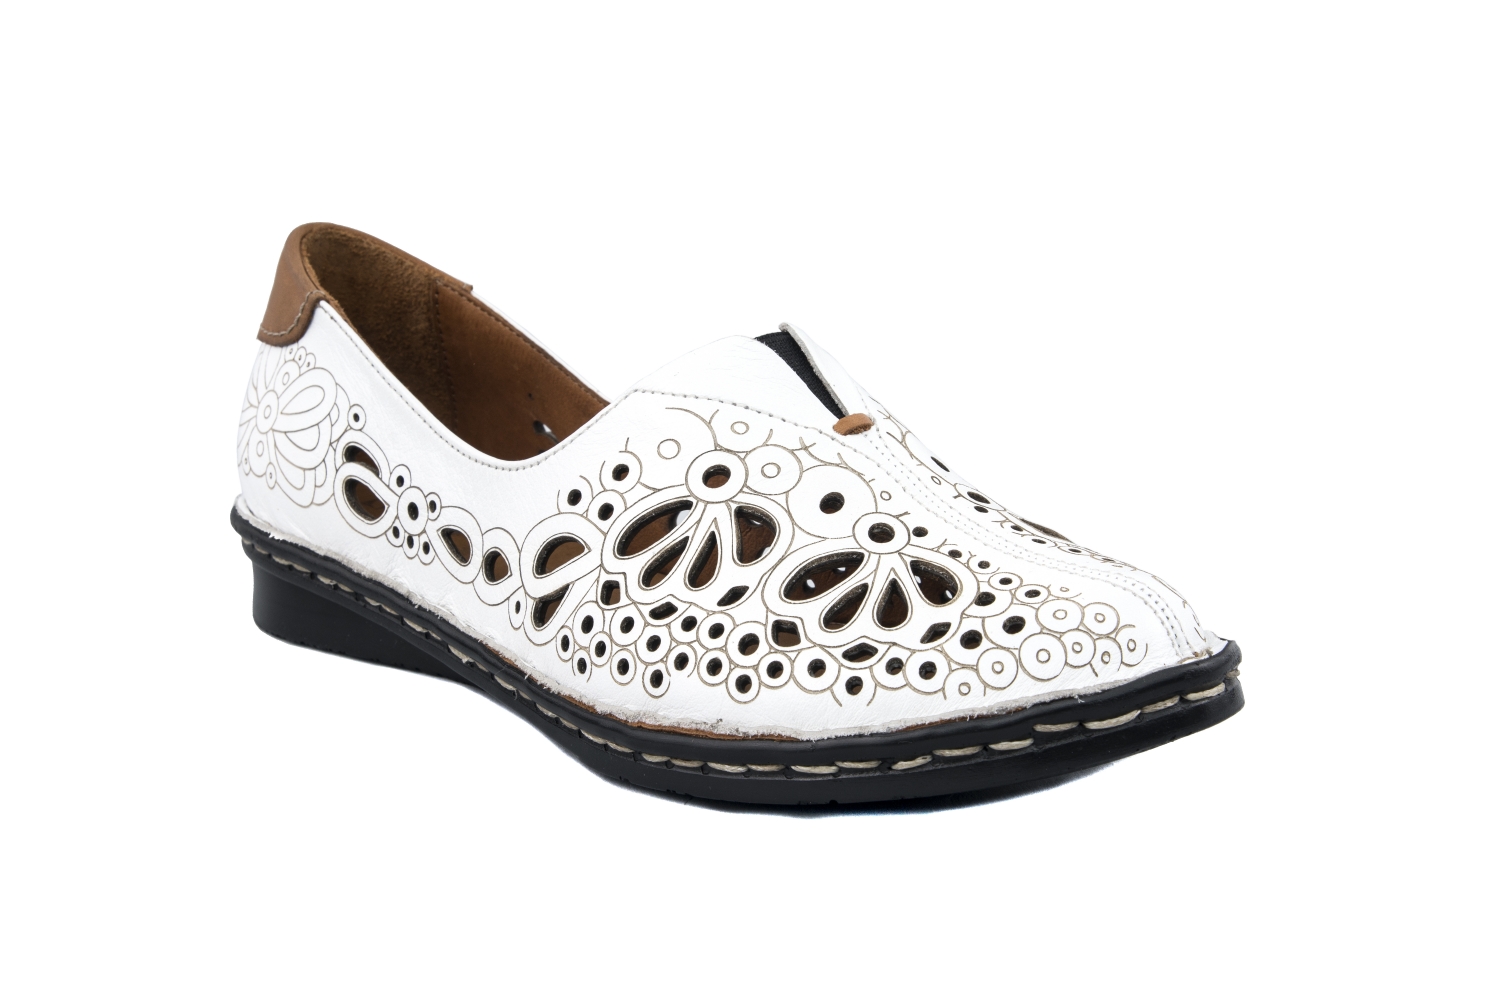 Дамски ежедневни обувки от естествена кожа в бял цвят - 69.99лв